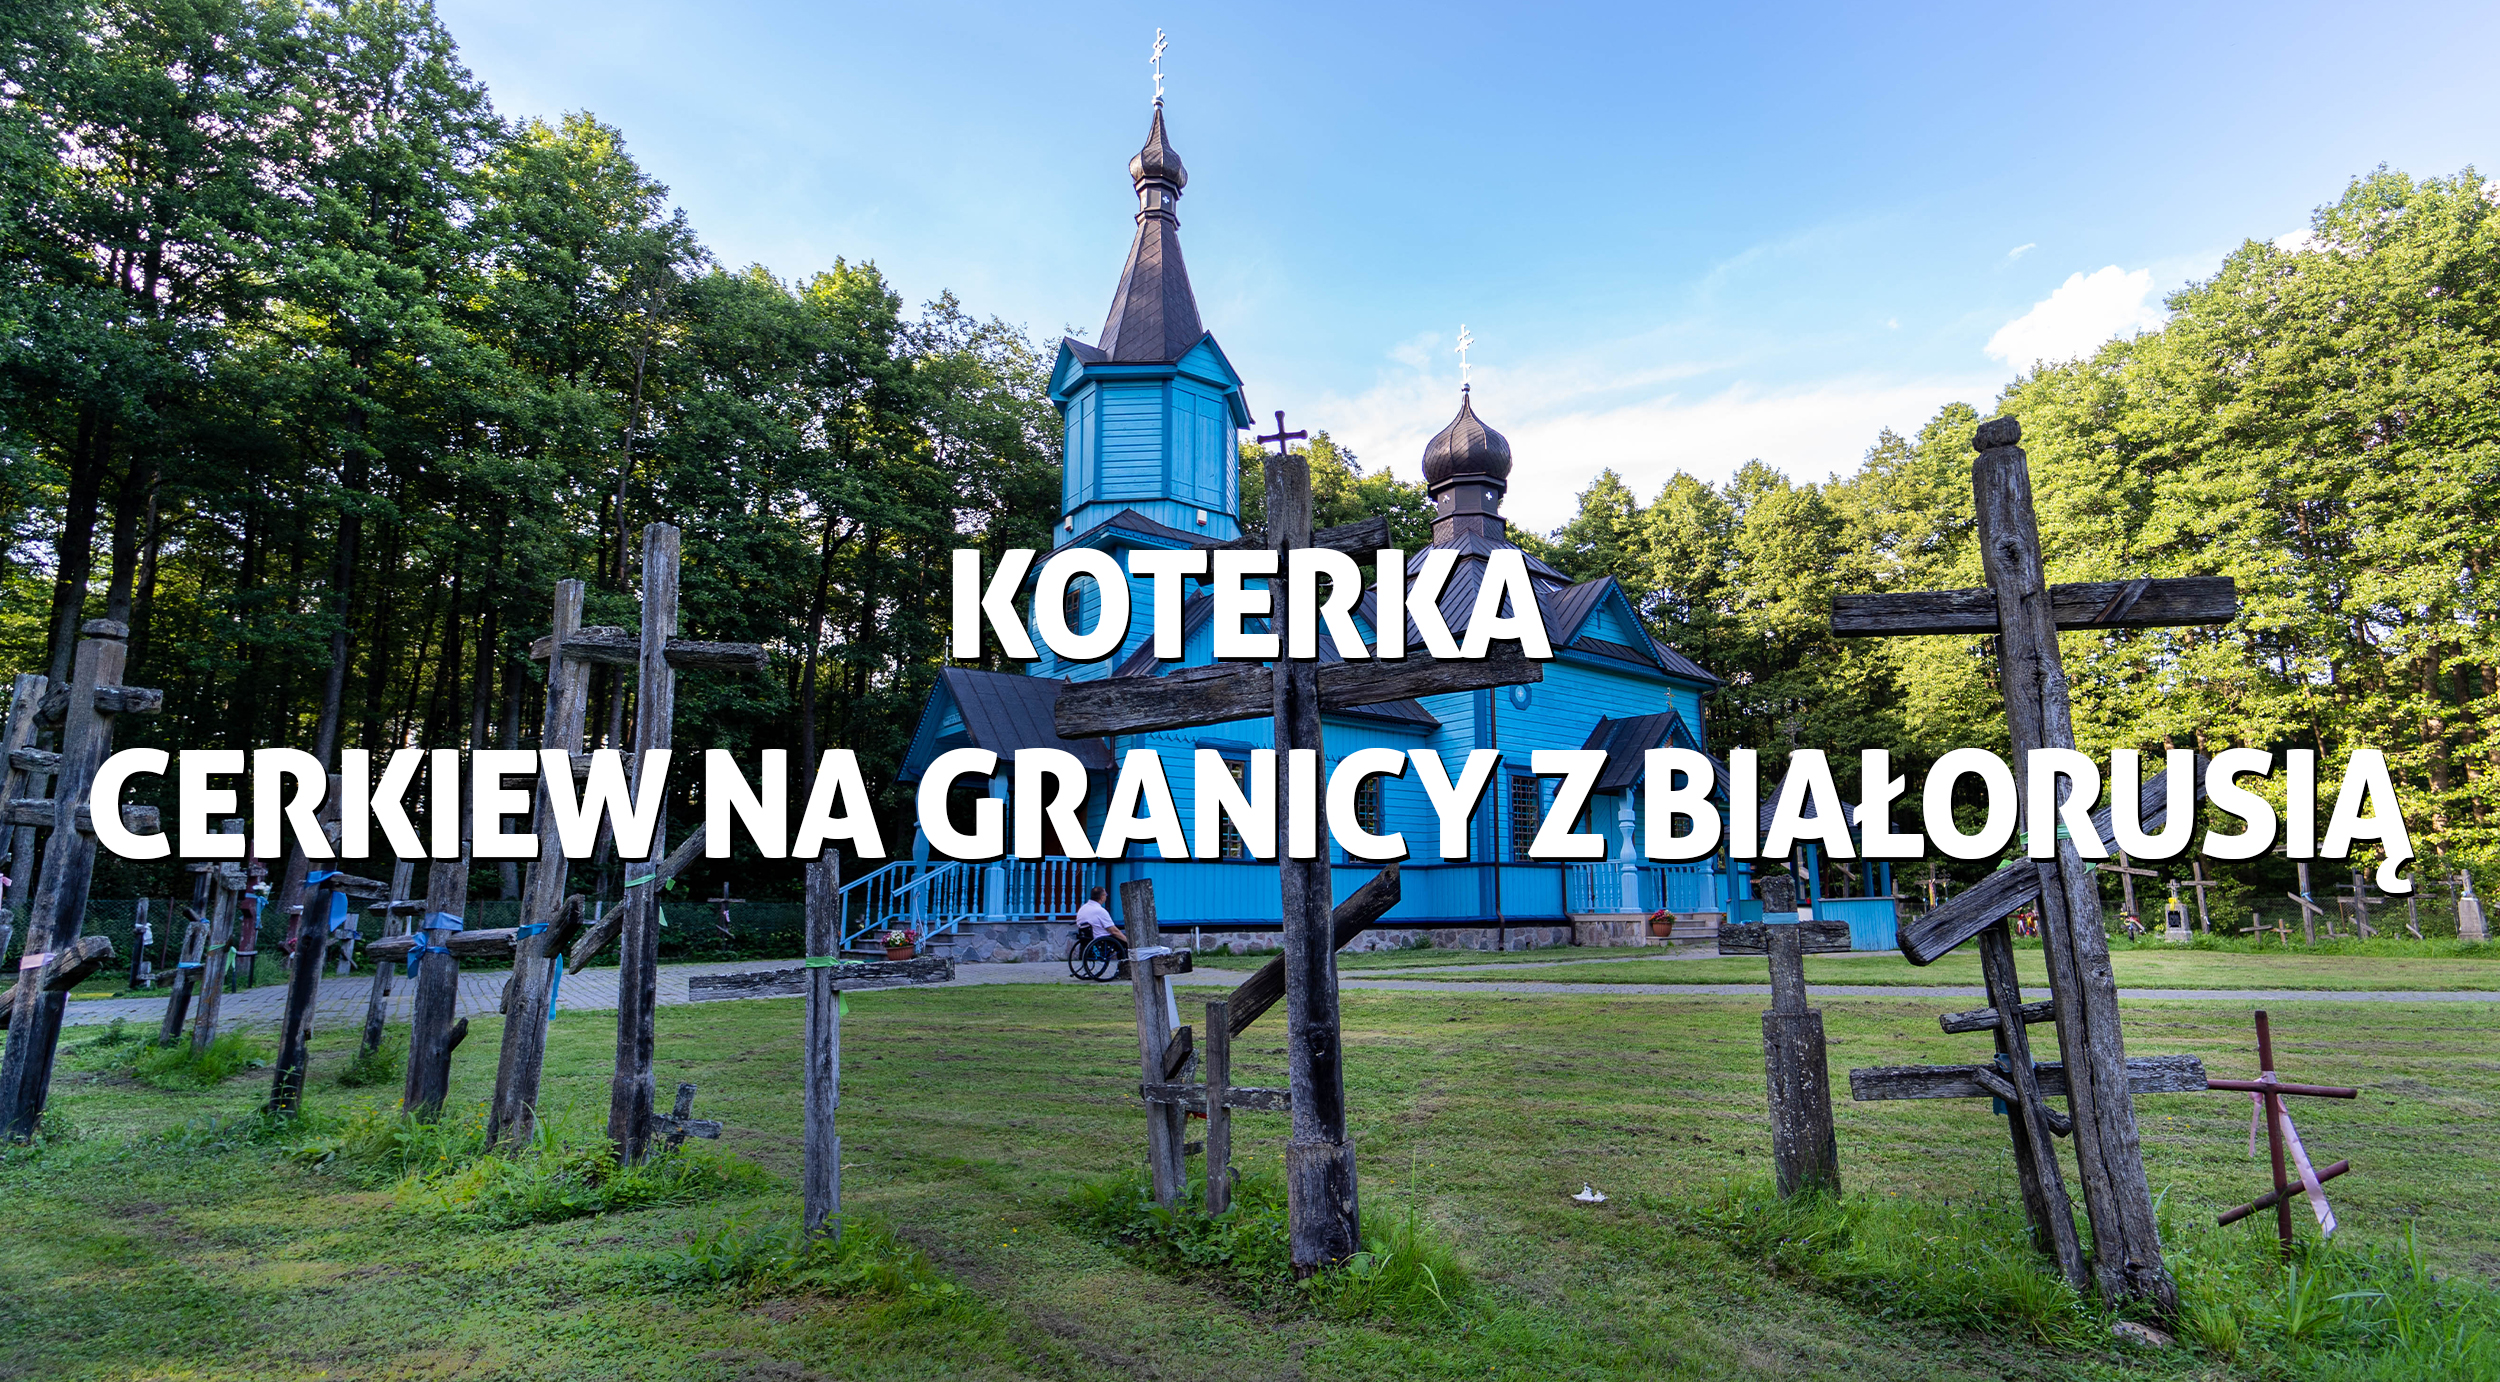 Koterka - cerkiew na granicy z Białorusią